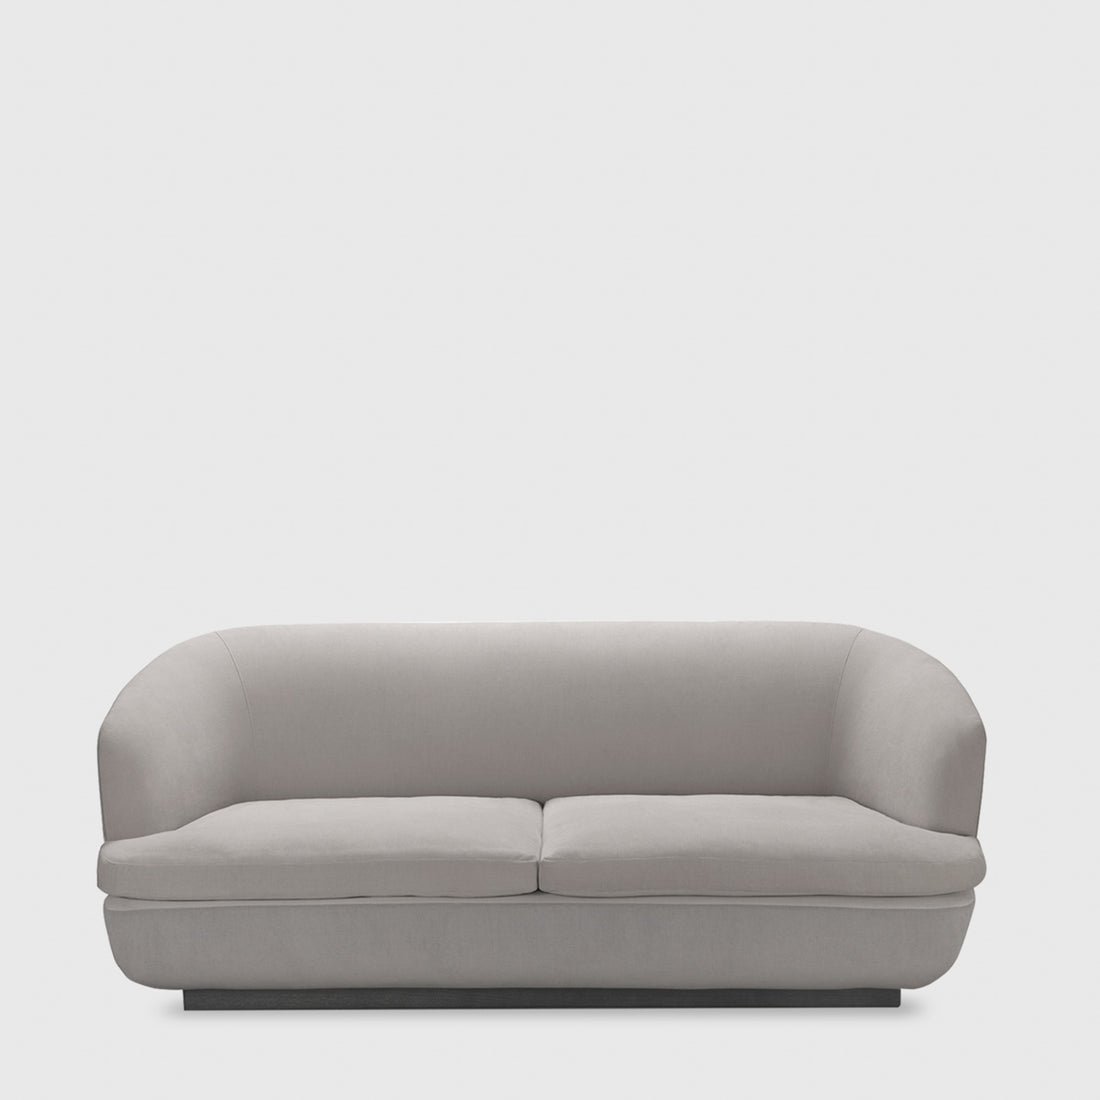 Gloob Sofa